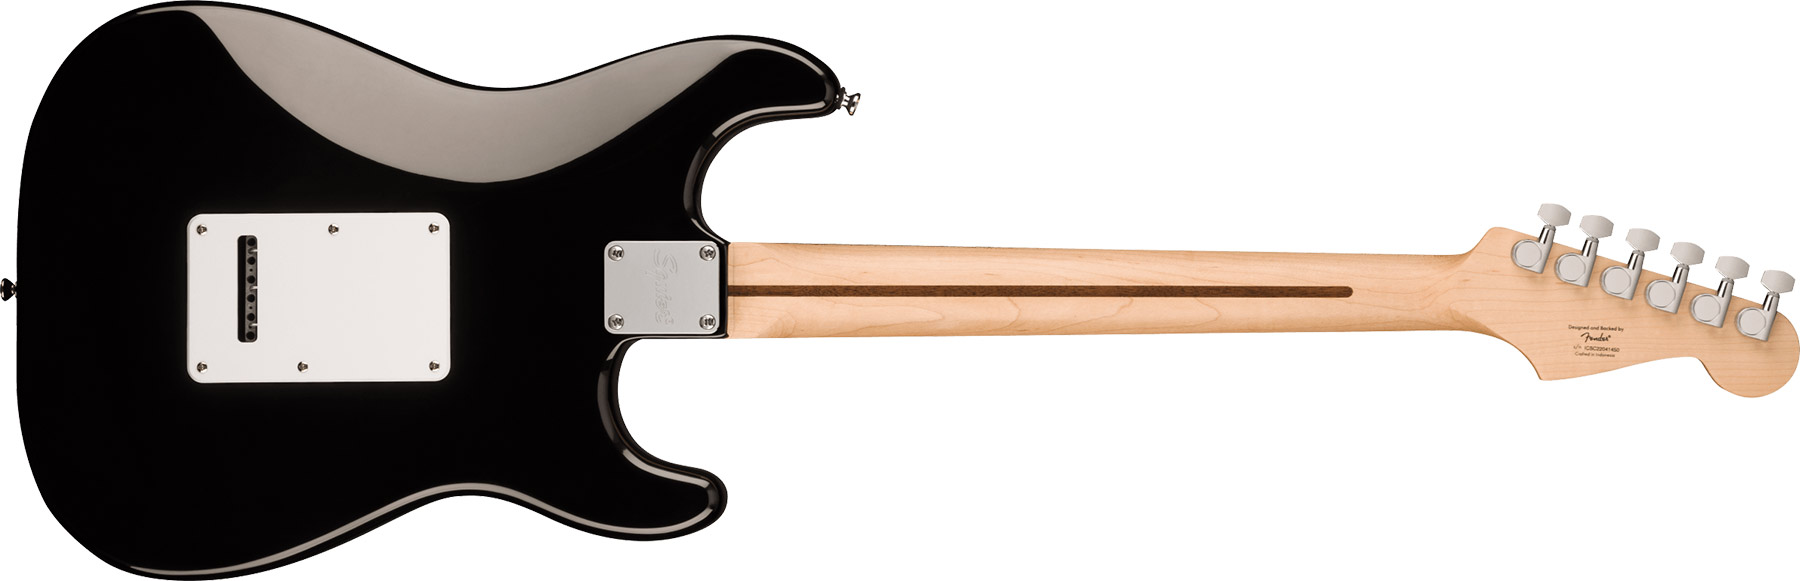 Squier Strat Sonic Lh Gaucher 3s Trem Mn - Black - Linkshandige elektrische gitaar - Variation 1